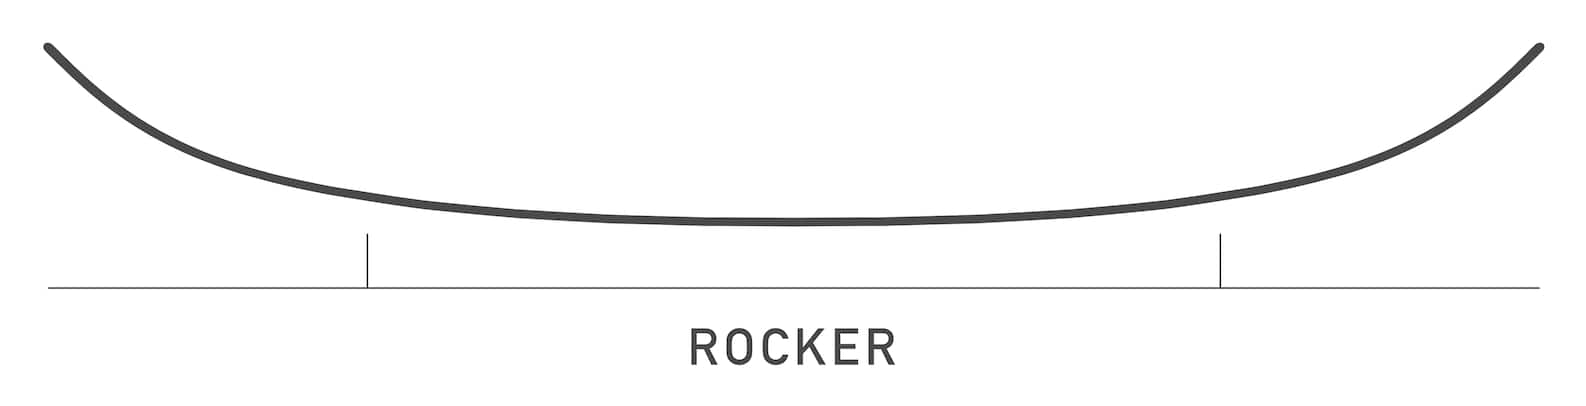 Rocker Snowboard Camber vs. Rocker vs. Flat | Burton